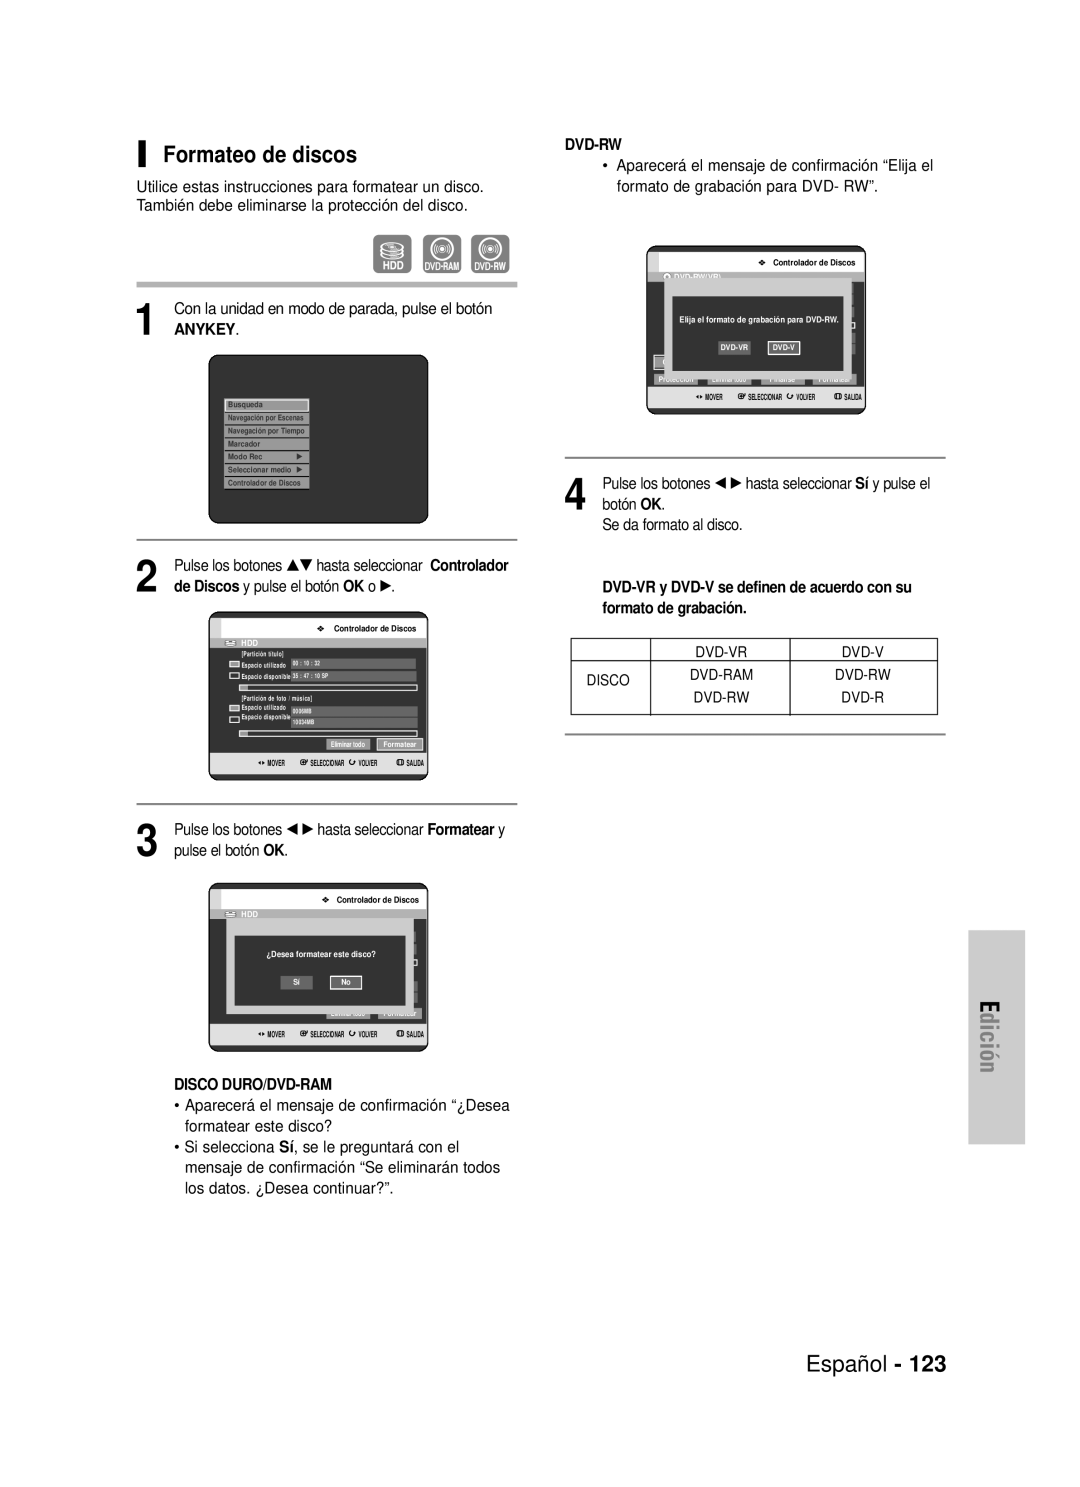 Samsung DVD-HR725/XEH manual Formateo de discos, Edición, Español, Con la unidad en modo de parada, pulse el botón, Anykey 